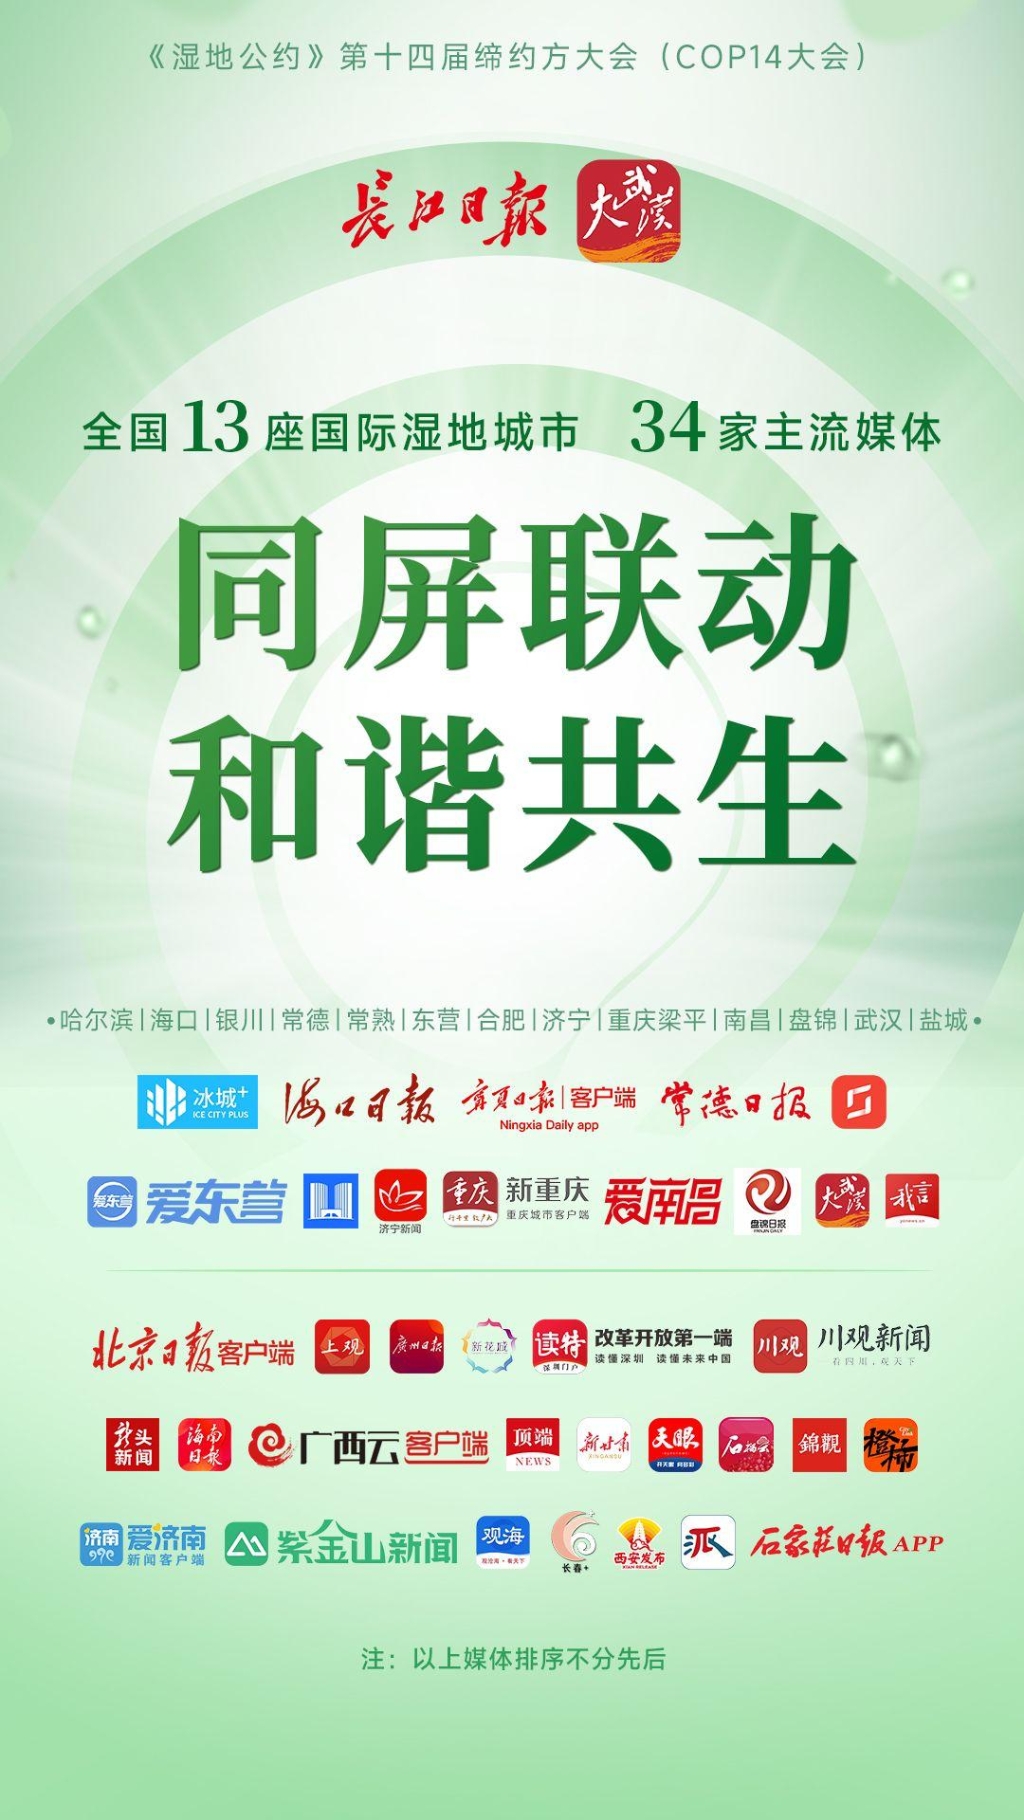 全国34家媒体同屏联动。长江日报大武汉客户端供图 华龙网发